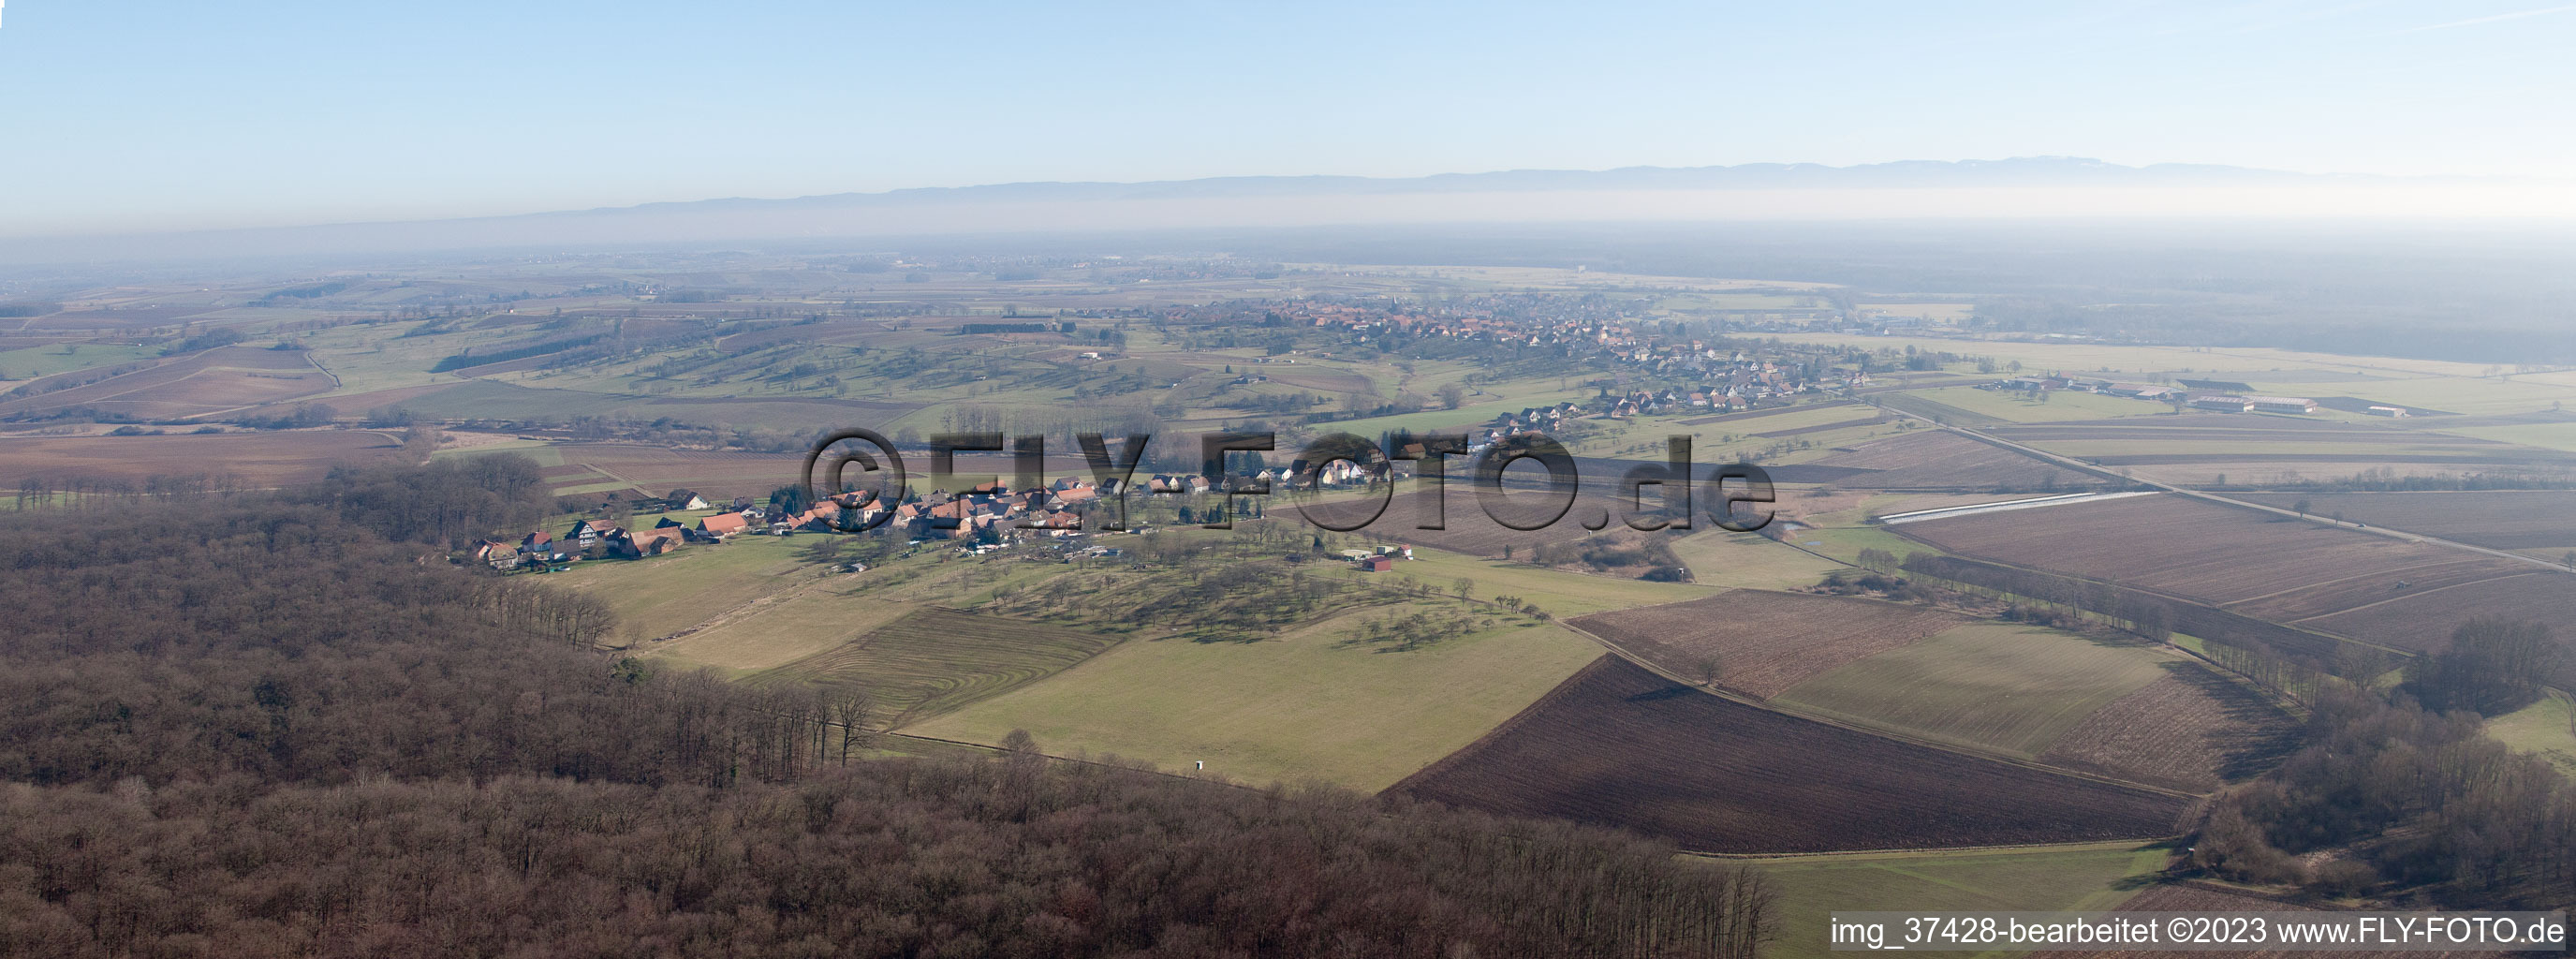 Drone recording of Merkwiller-Pechelbronn in the state Bas-Rhin, France